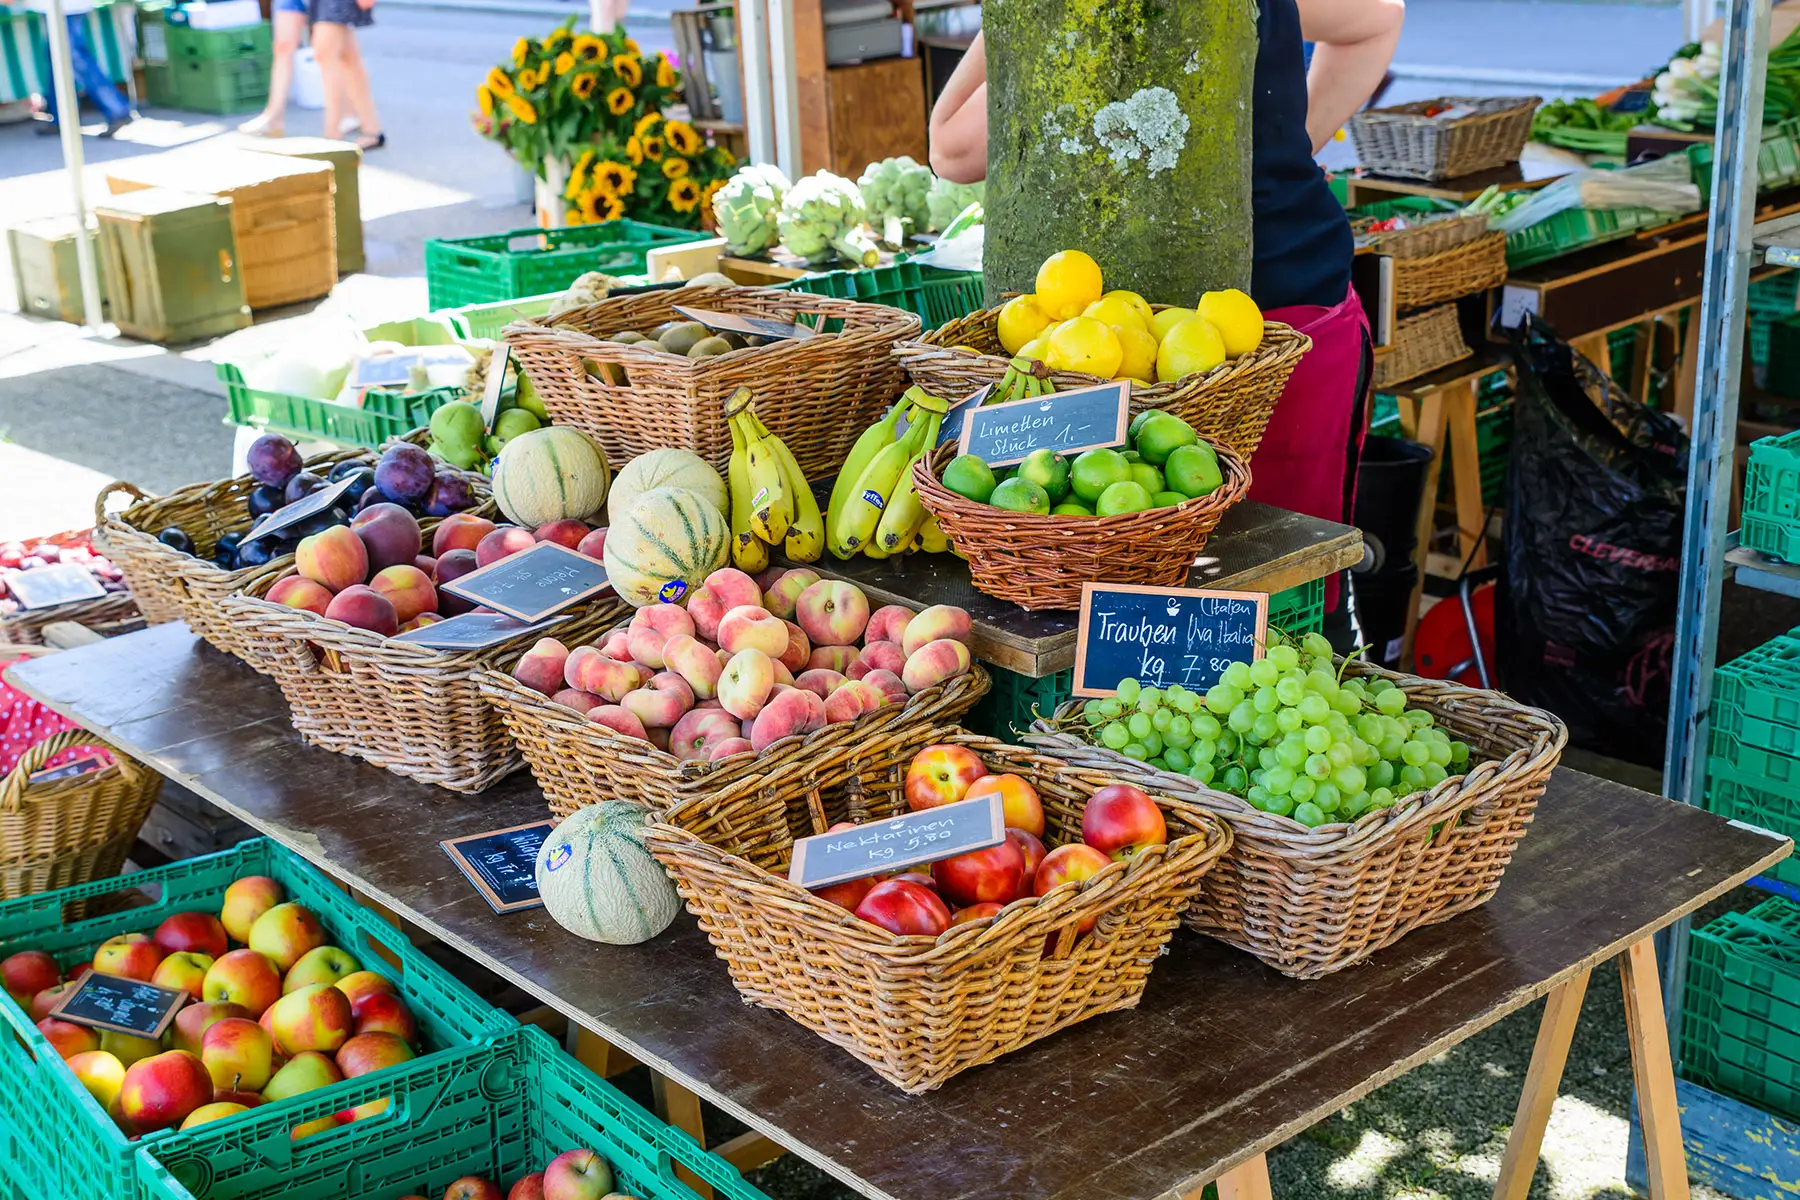 A fruit market in Switzerland